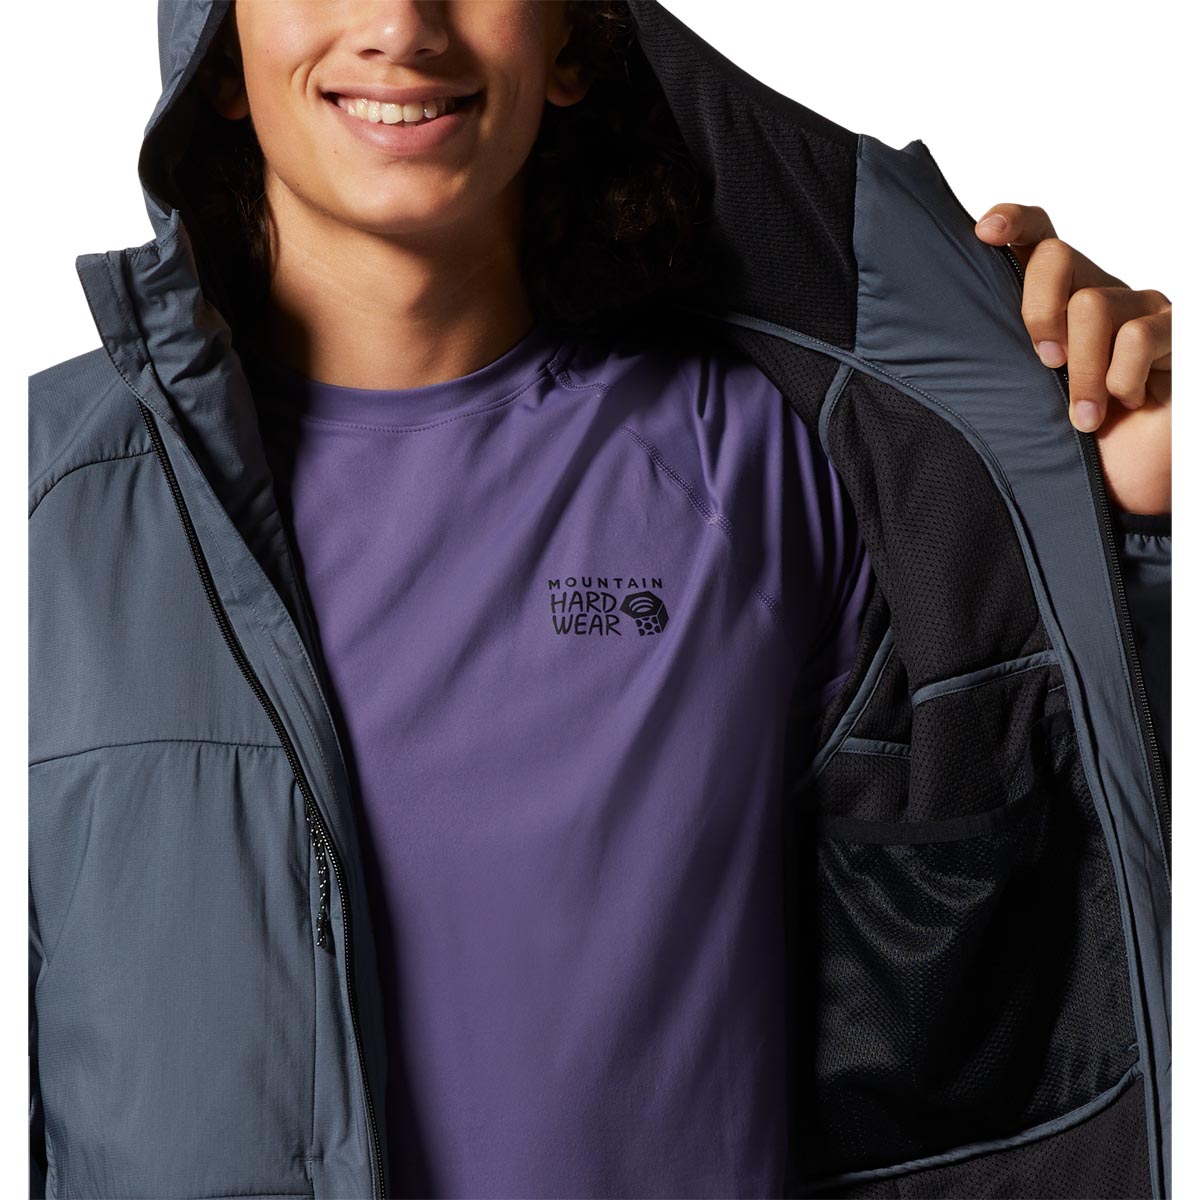 Mountain Hardwear Men's Kor AirShell Warm Jacket